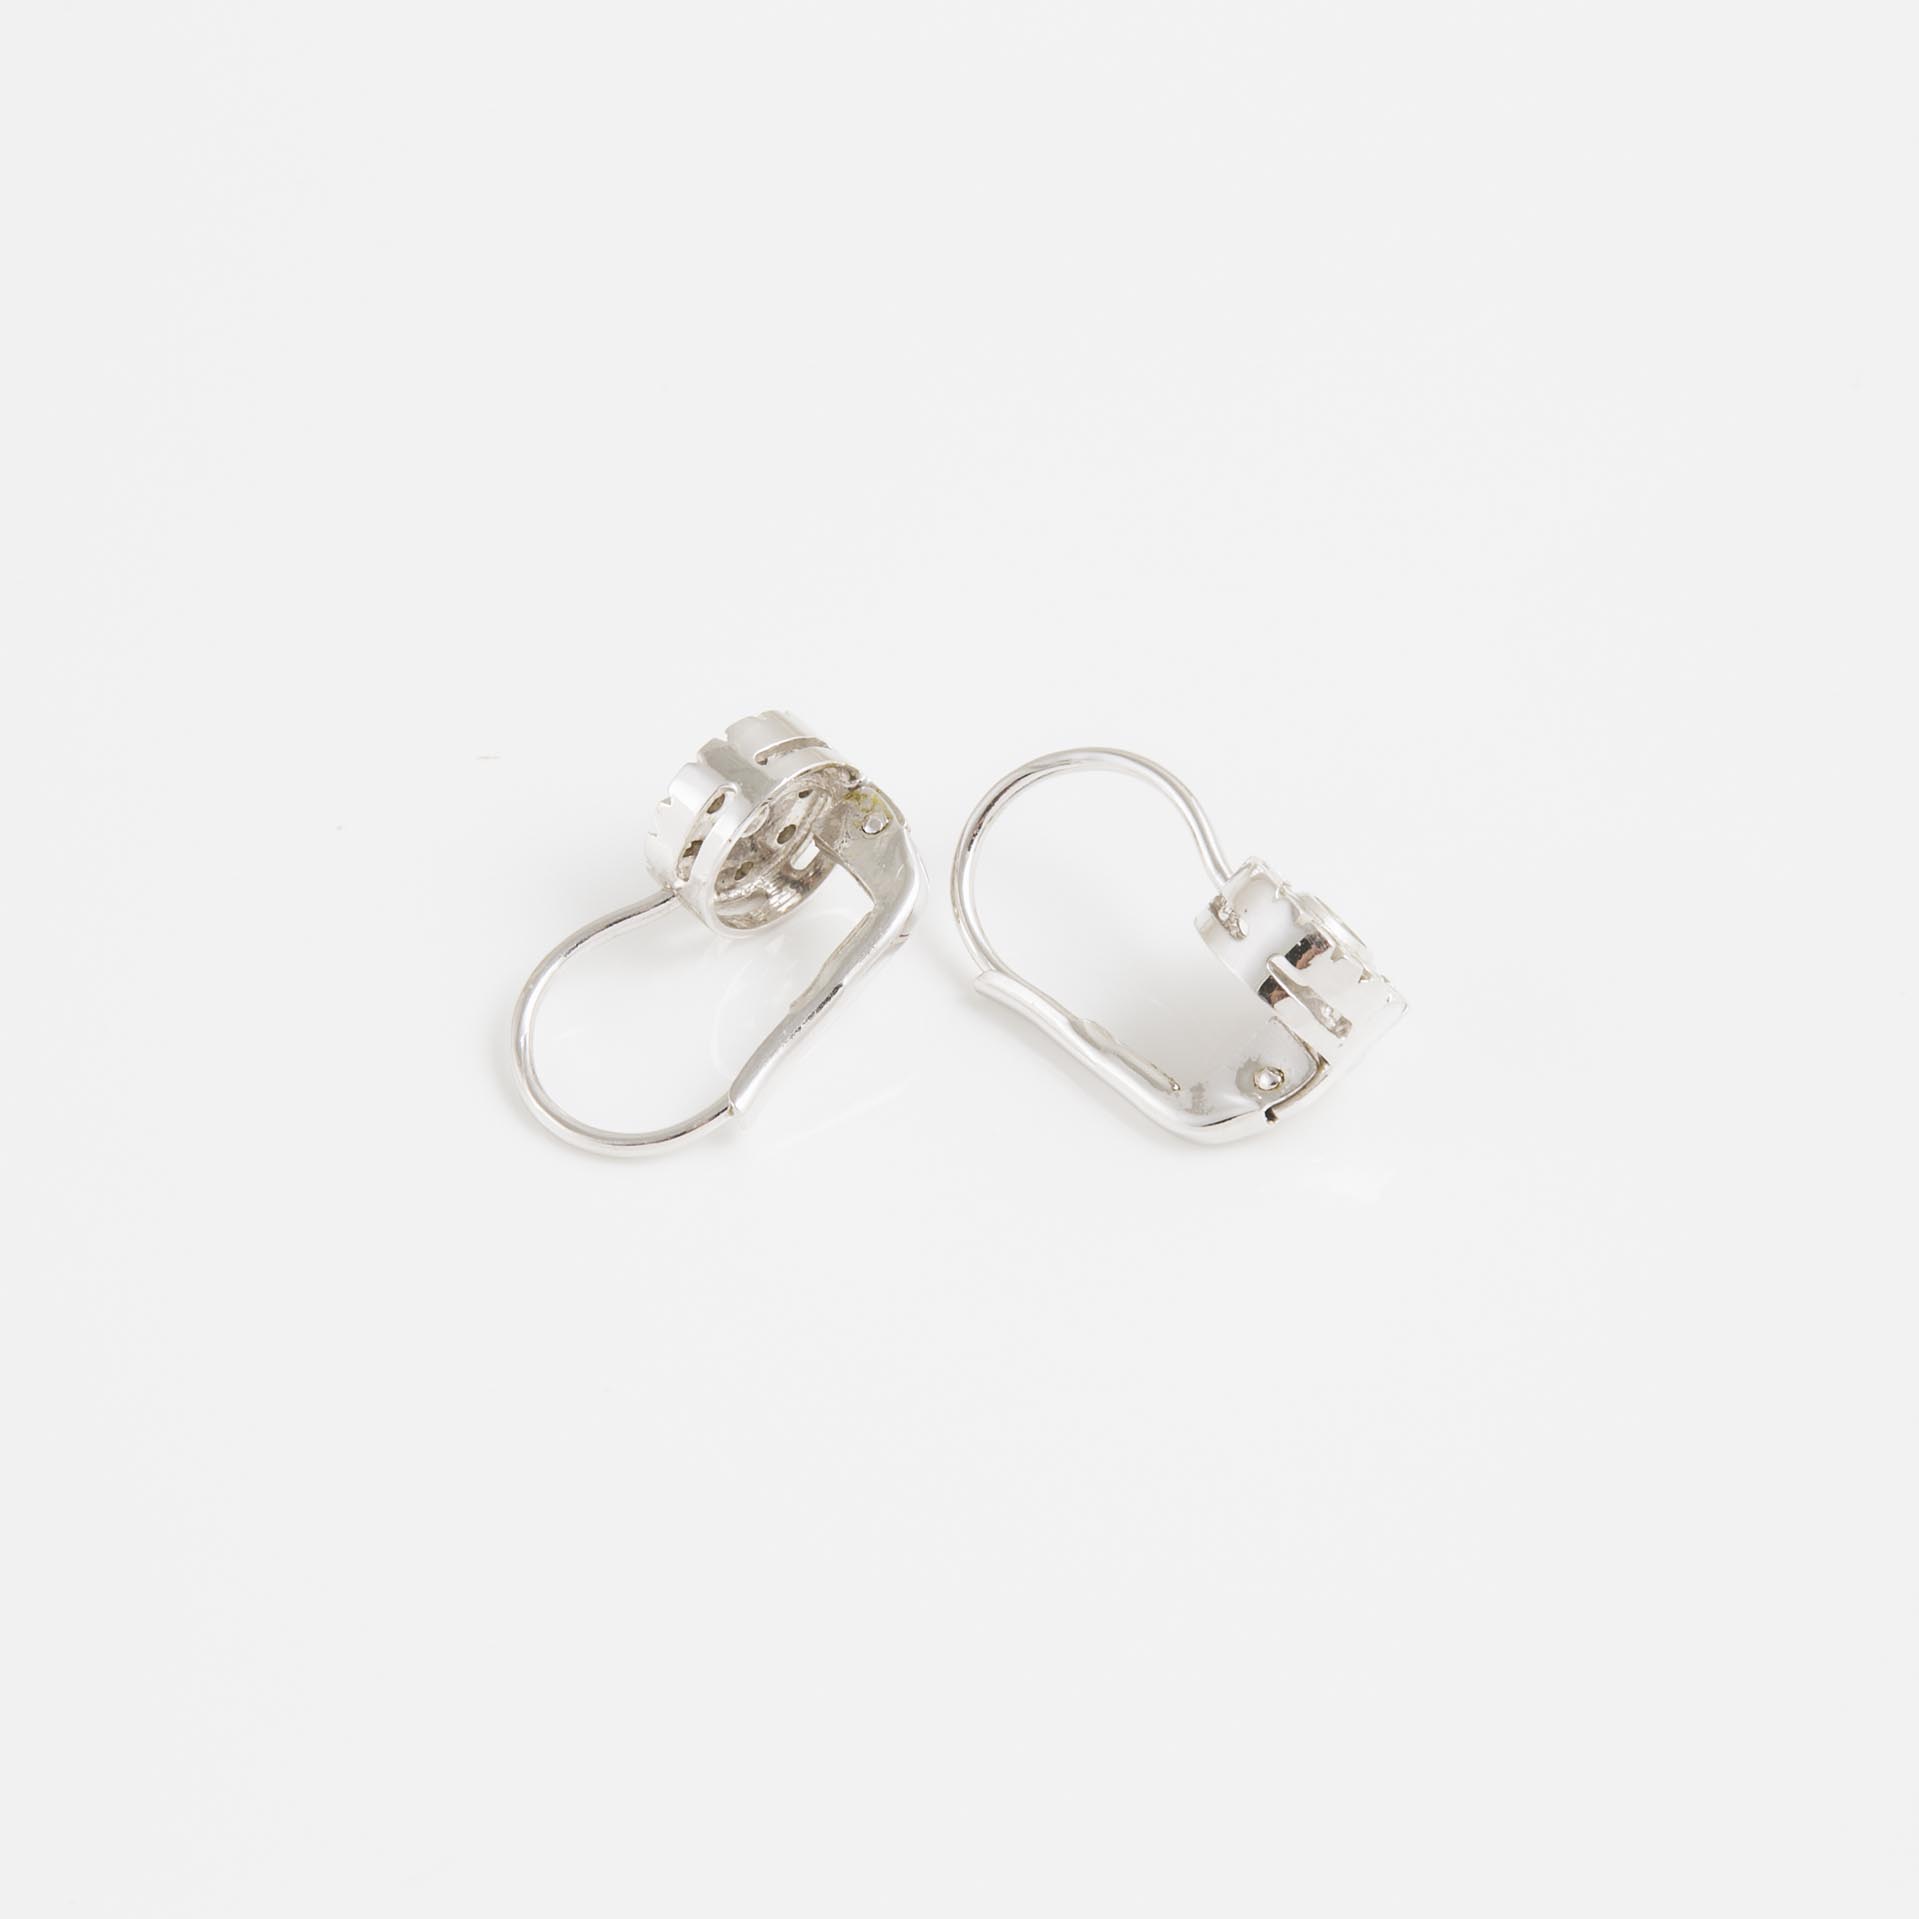 Pair Of 18k White Gold Hookback Earrings